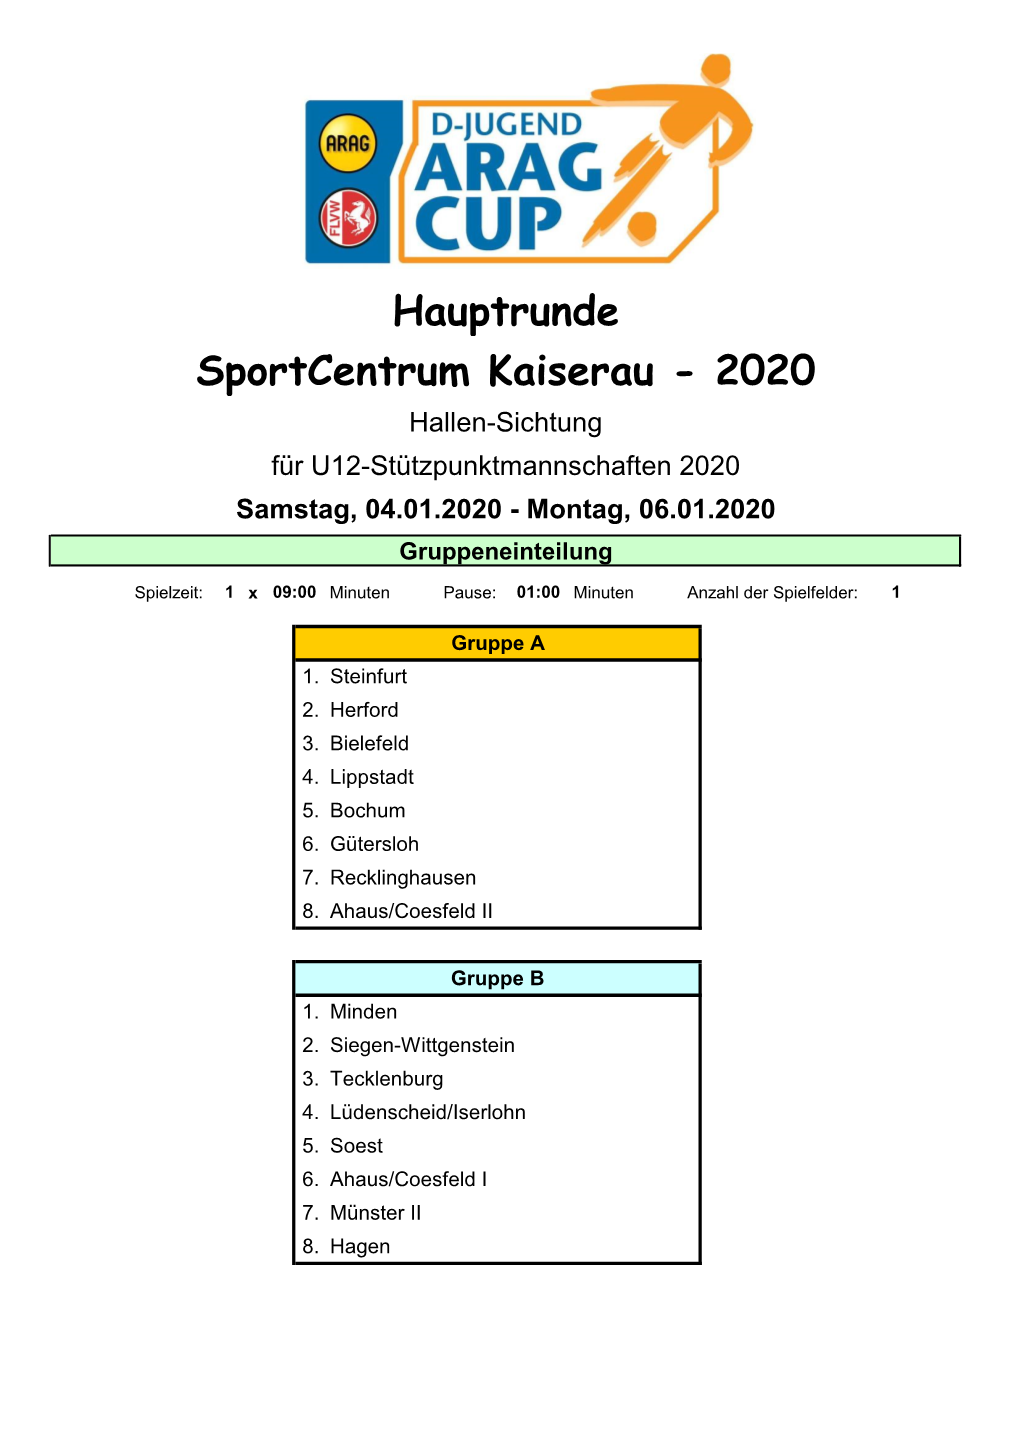 Endstand Hauptrunde ARAG Cup 2020